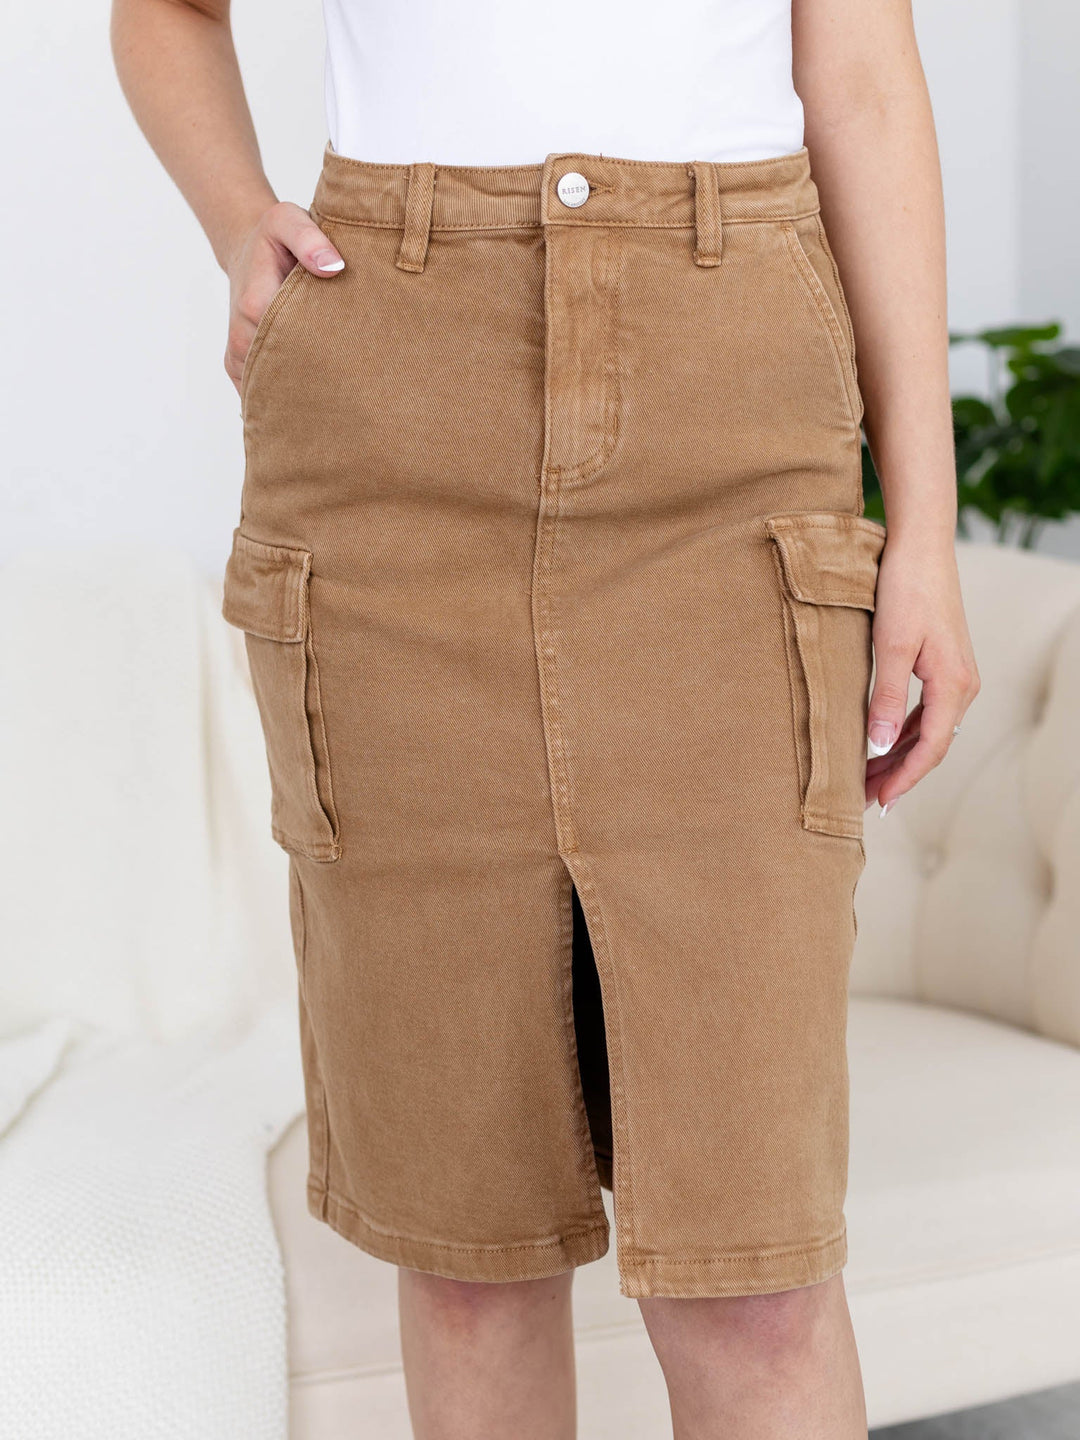 RISEN High Rise Midi Cargo SkirtNon-Denim Shorts/Skirts